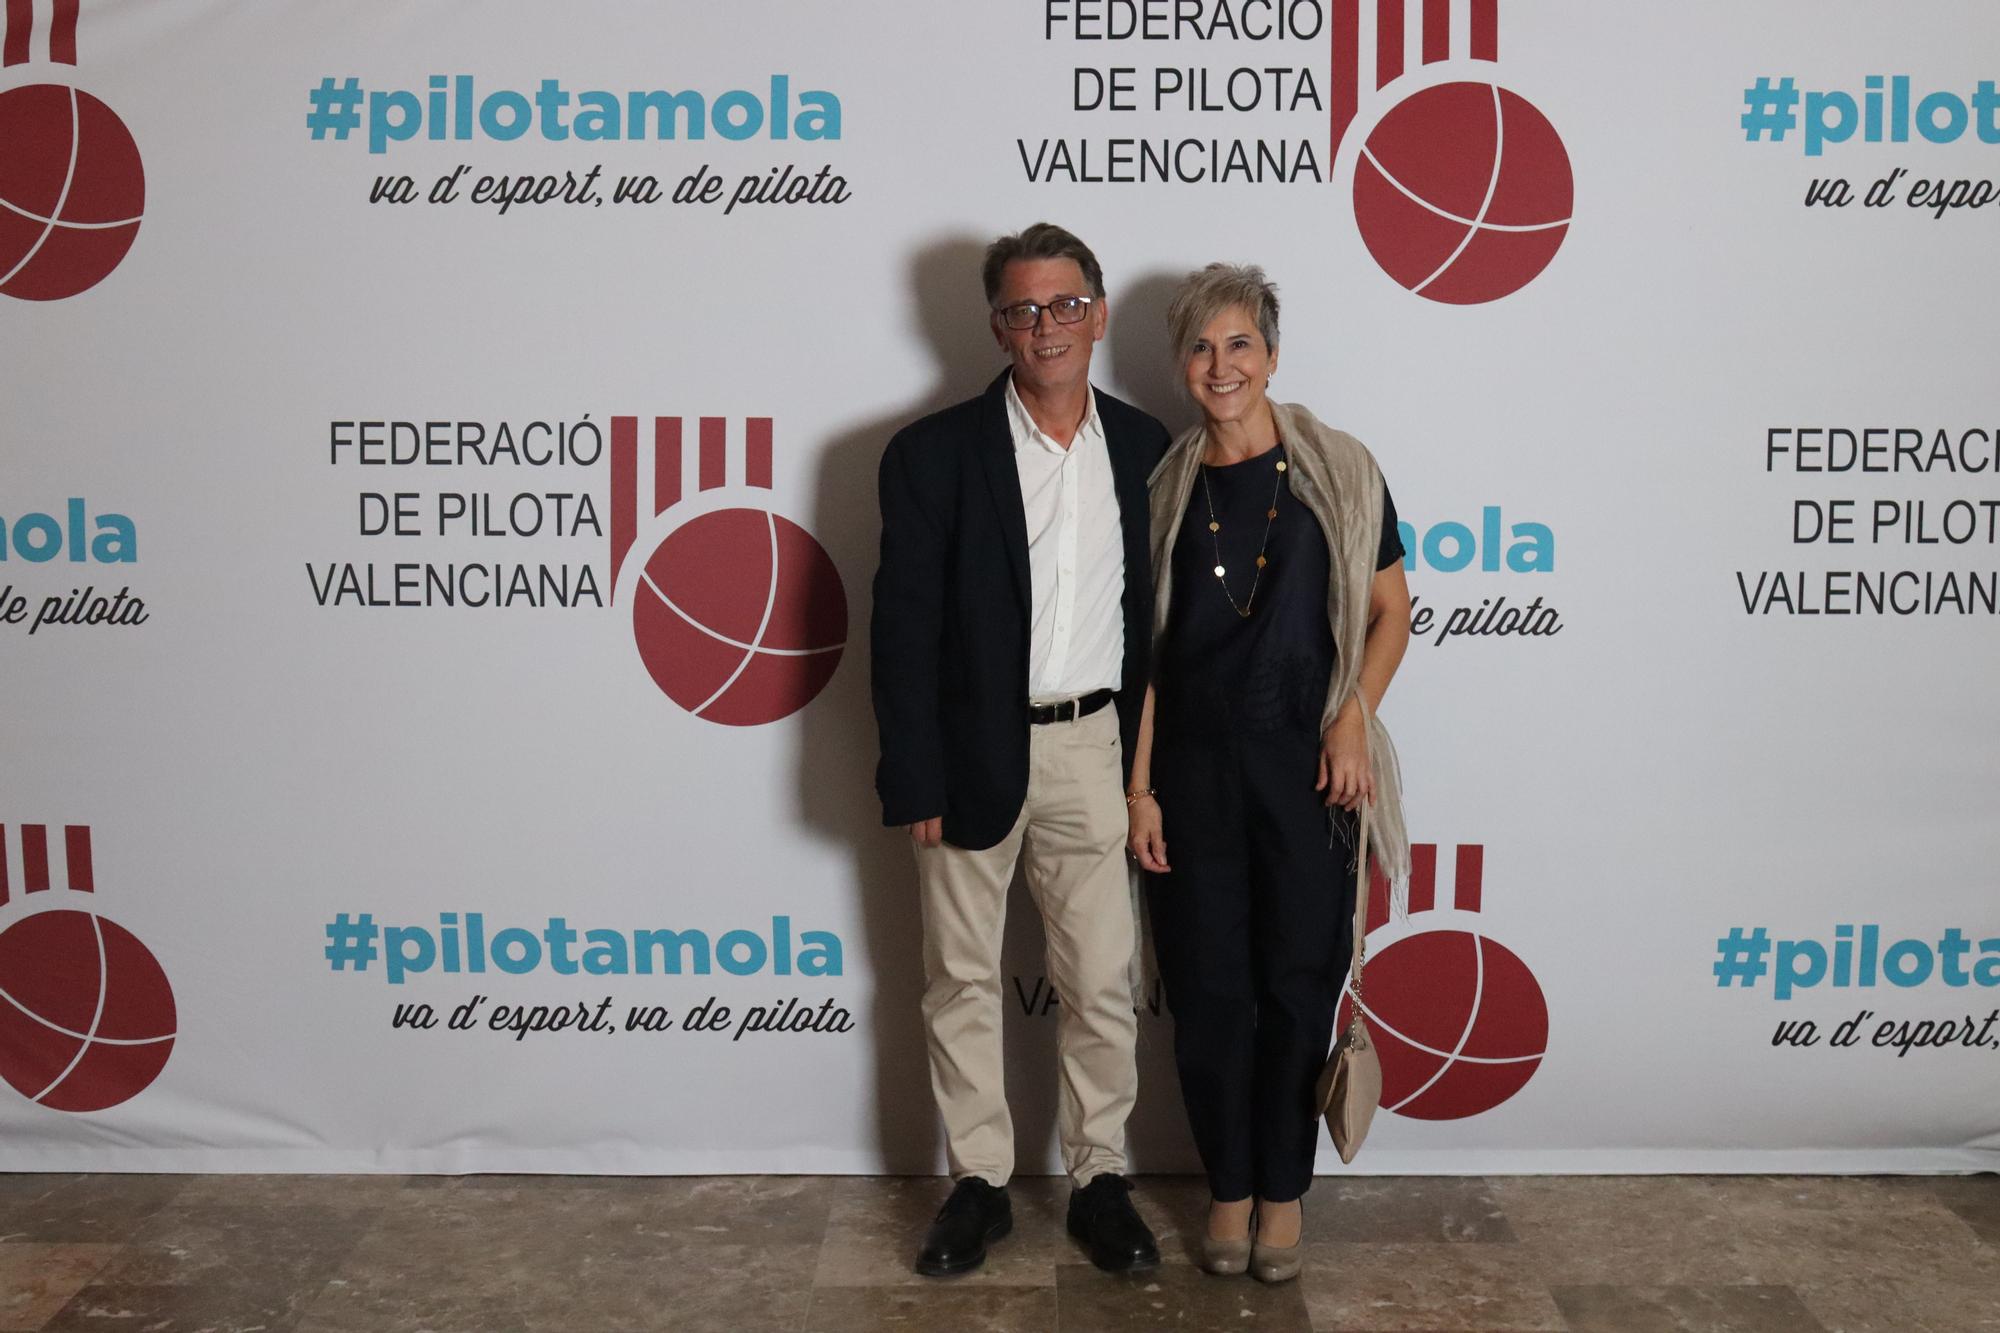 FOTO 10 - Josep Miquel Moya, director general de l'Esport, amb la seua dona Fuen.JPG